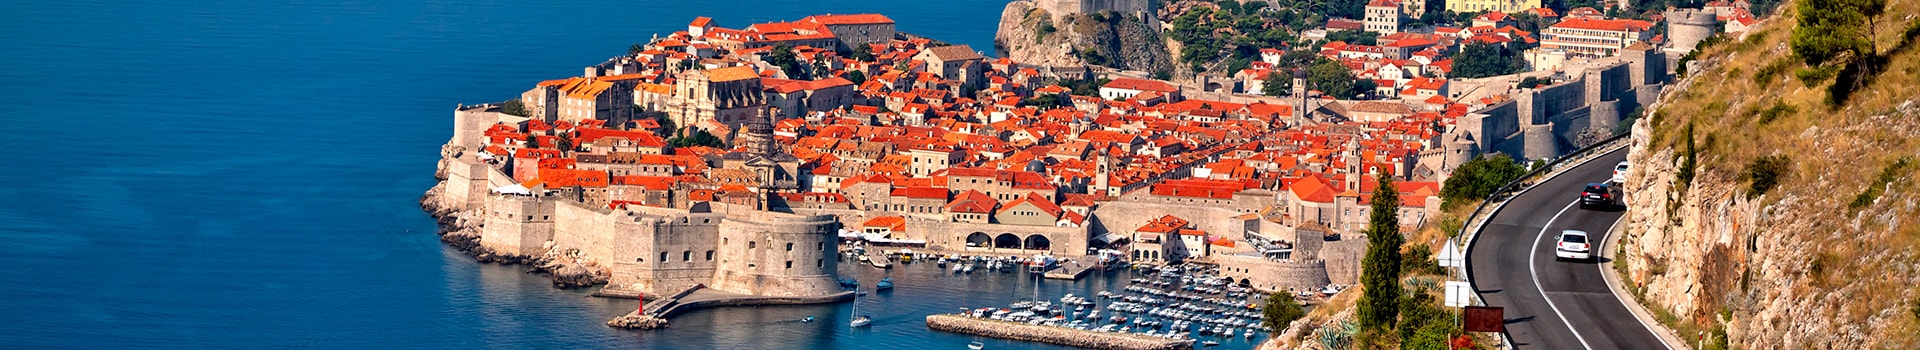 Bordeaux - Dubrovnik